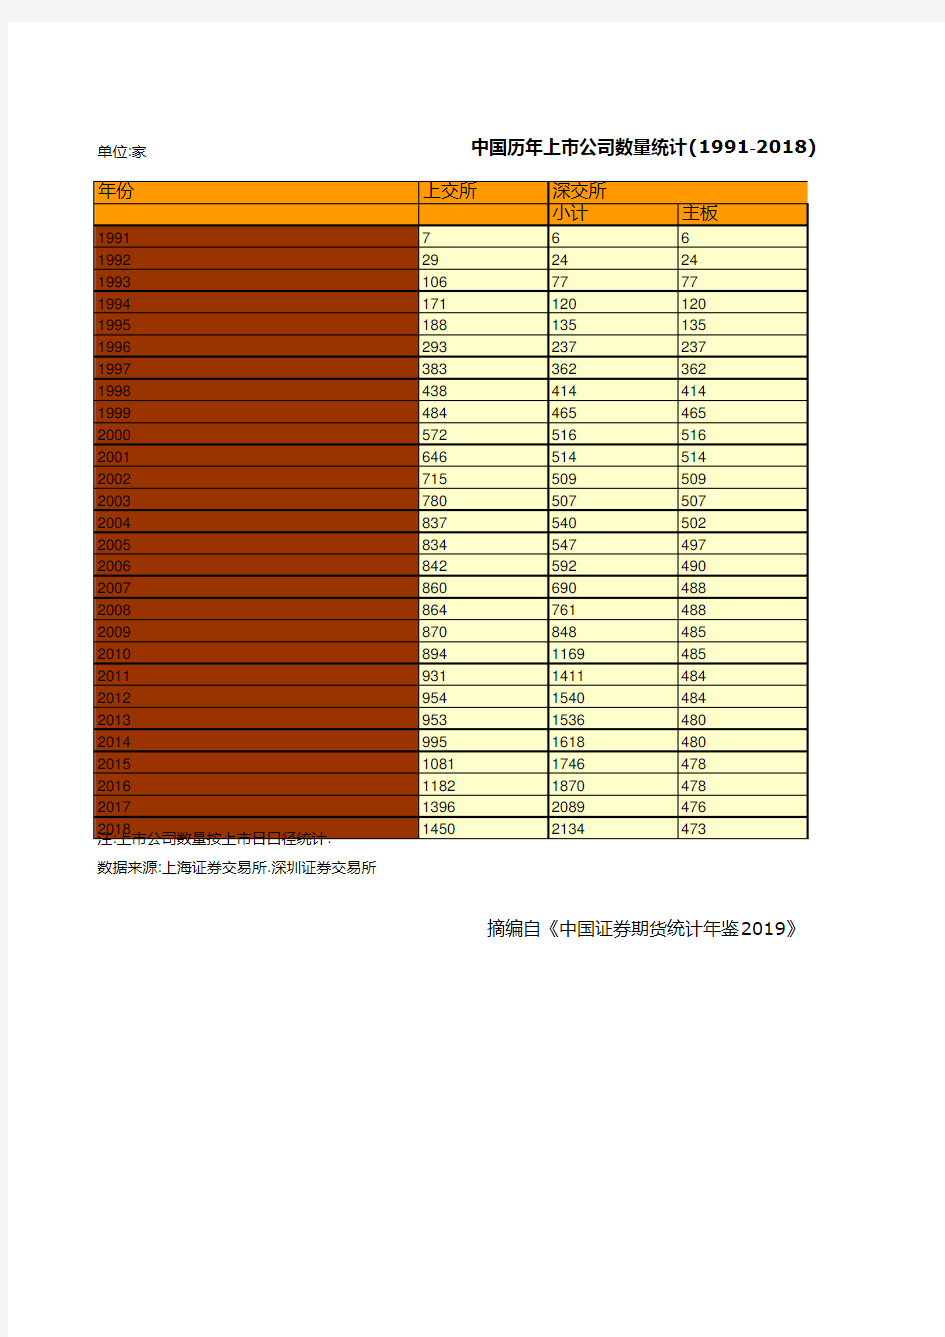 中国历年上市公司数量统计(1991-2018)